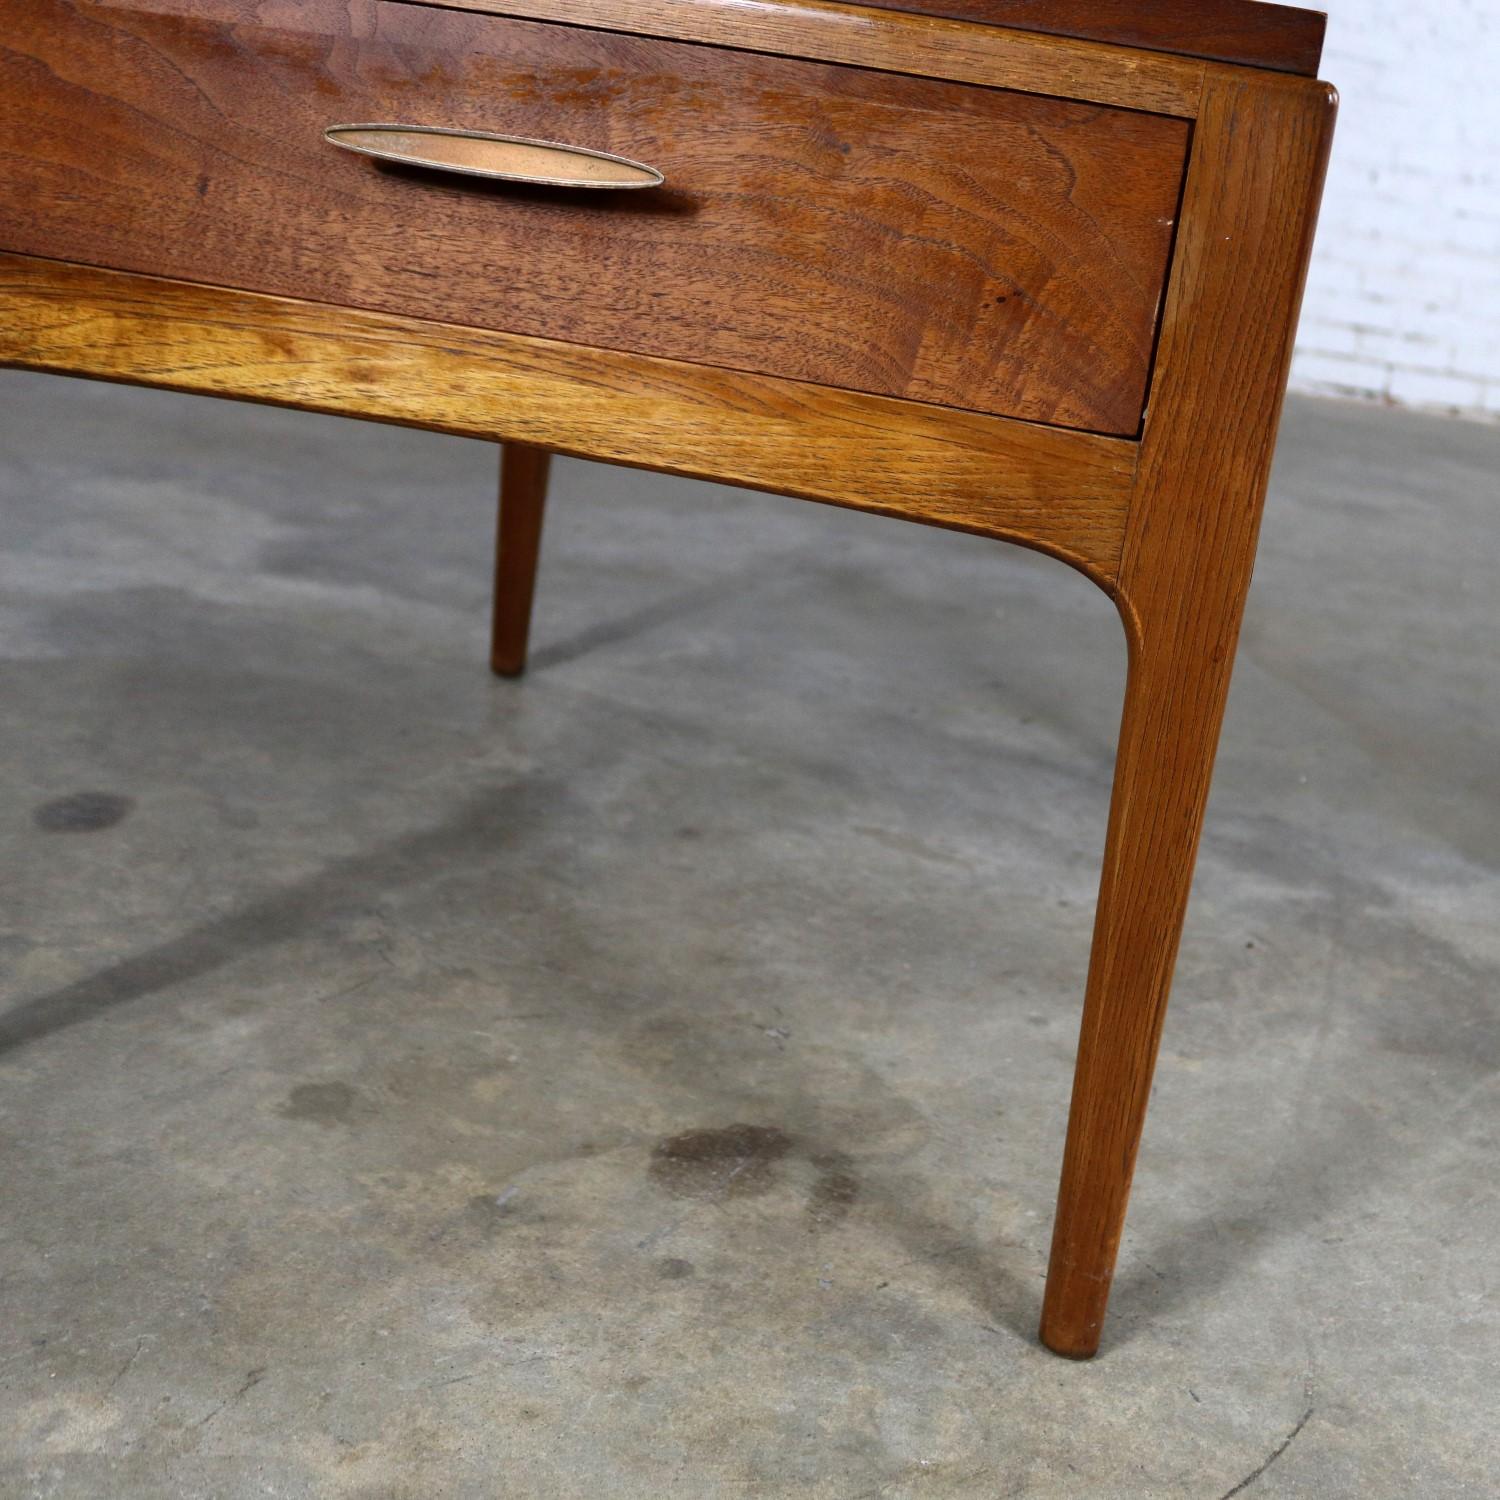 20th Century Lane Rhythm Walnut End Table with Drawer Mid-Century Modern